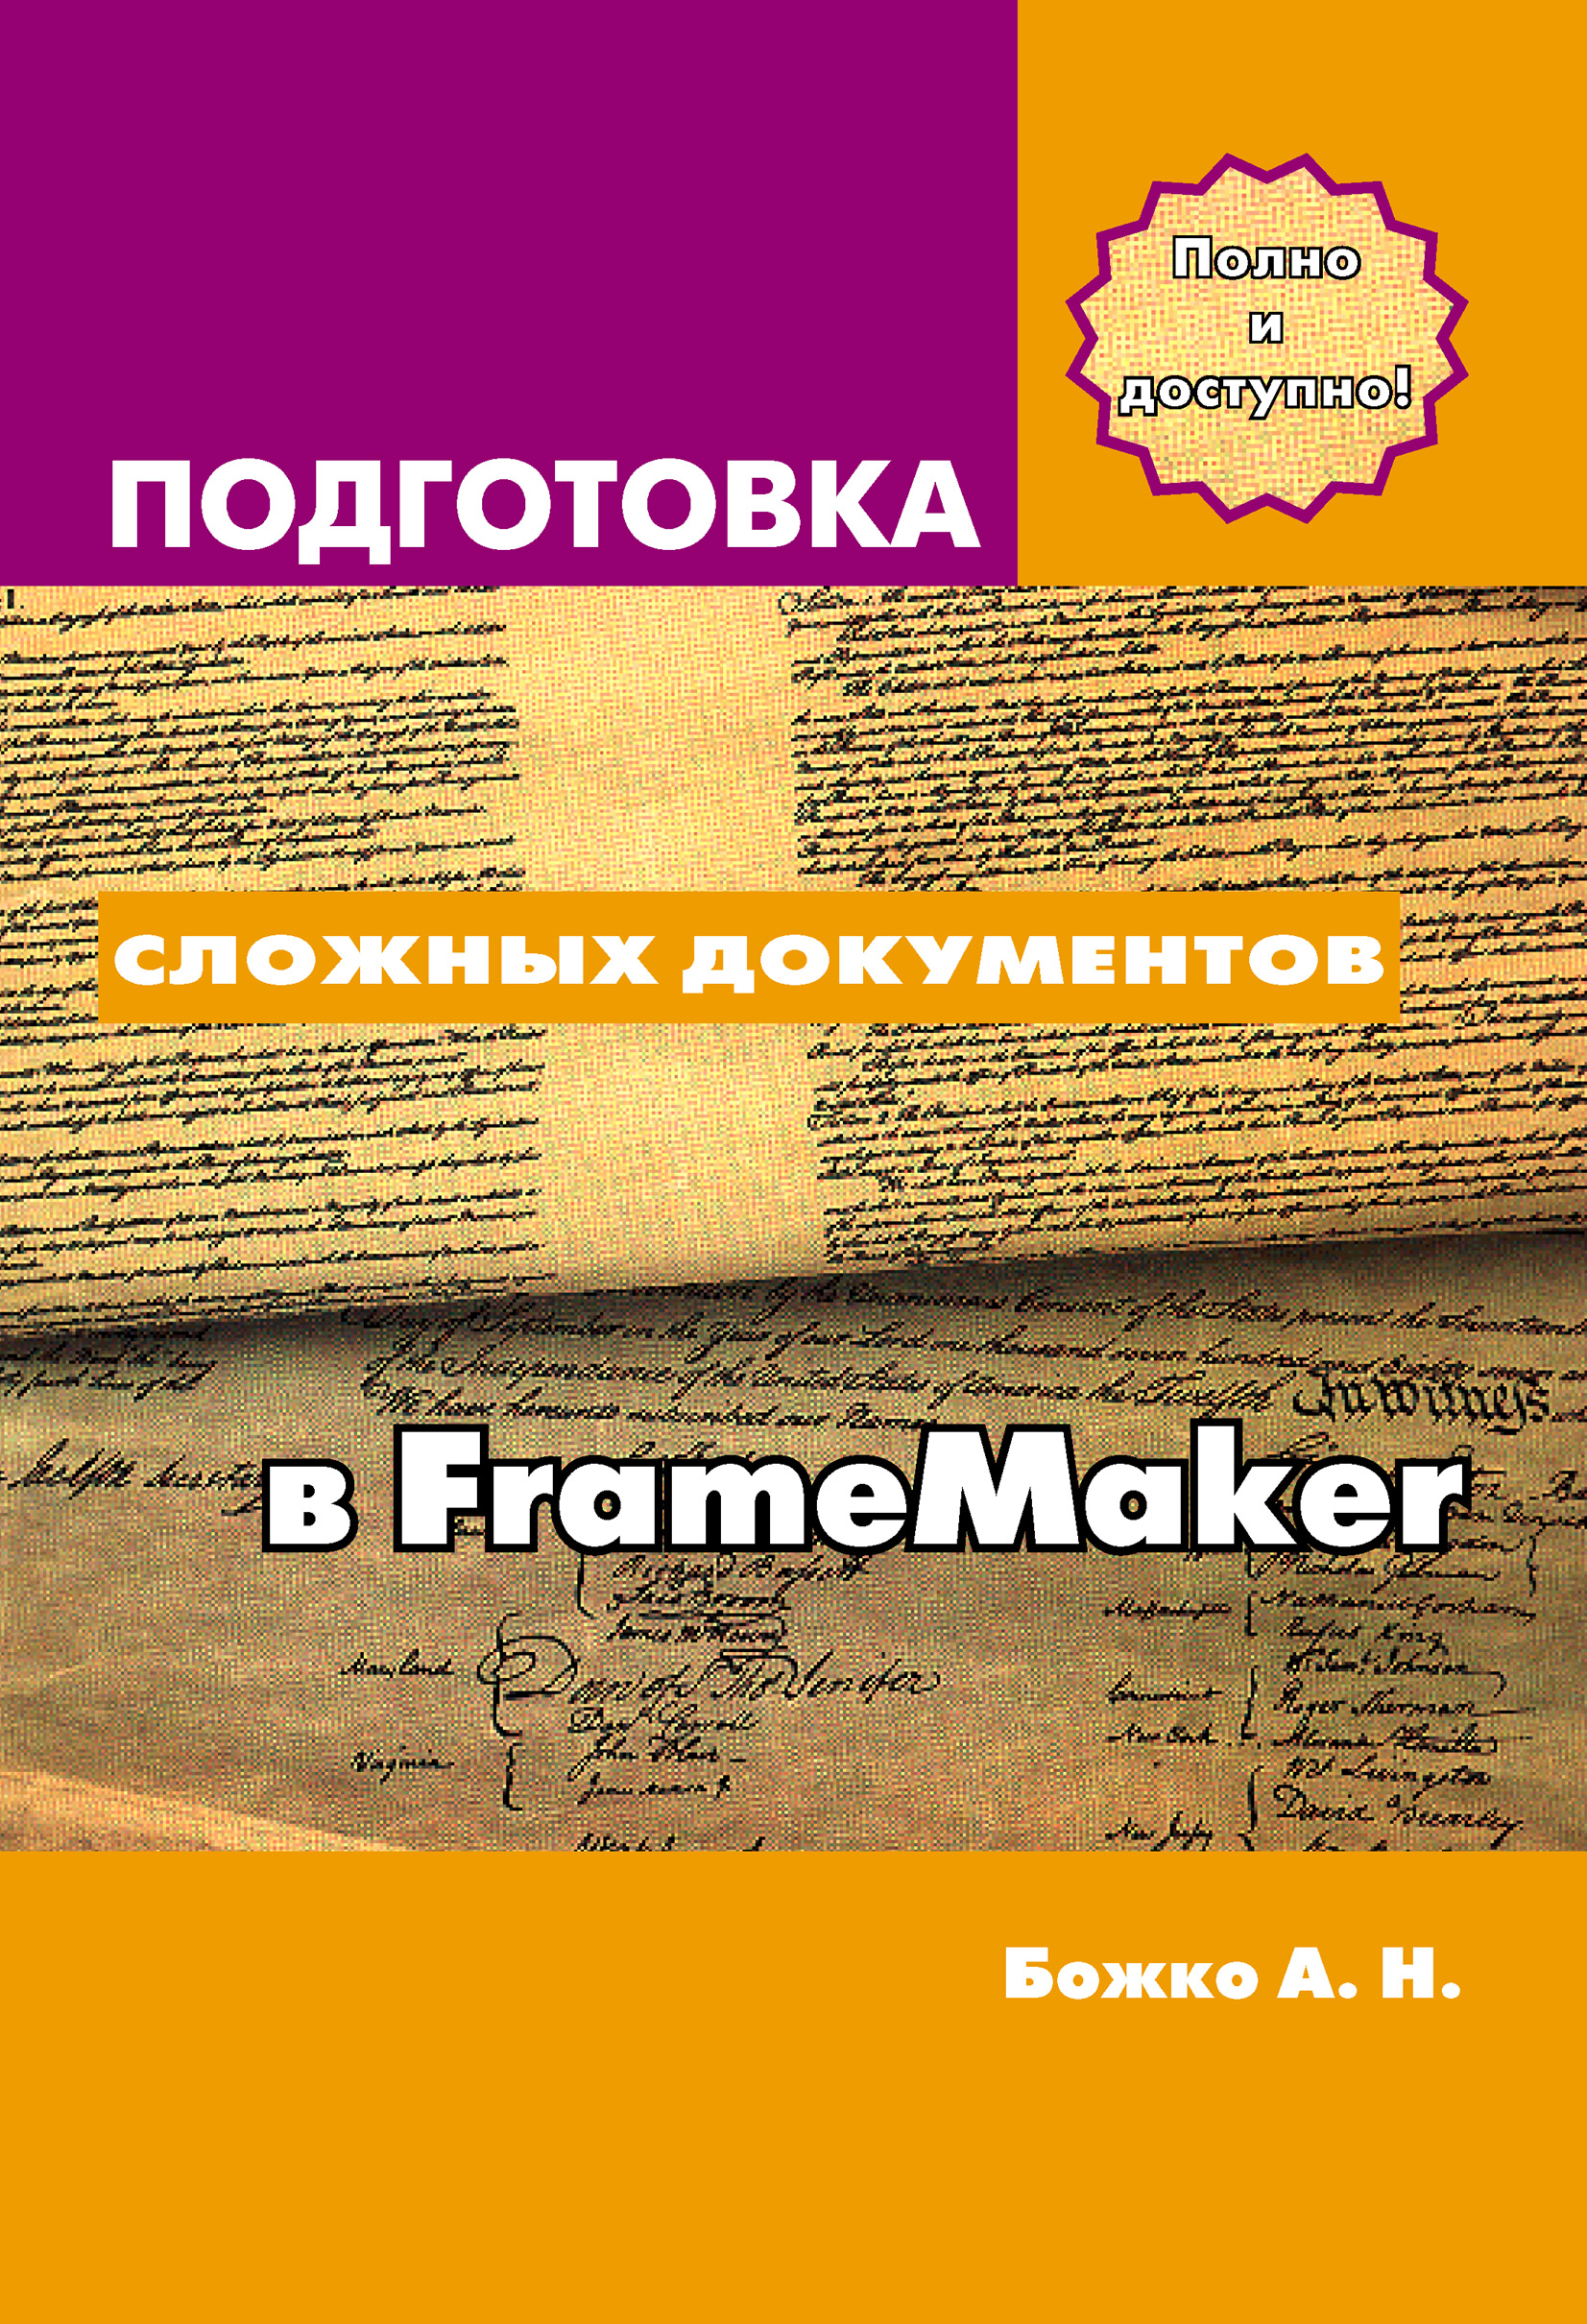 Книга  Подготовка сложных документов в FrameMaker созданная Аркадий Божко может относится к жанру издательское дело, программы. Стоимость электронной книги Подготовка сложных документов в FrameMaker с идентификатором 6602041 составляет 559.00 руб.